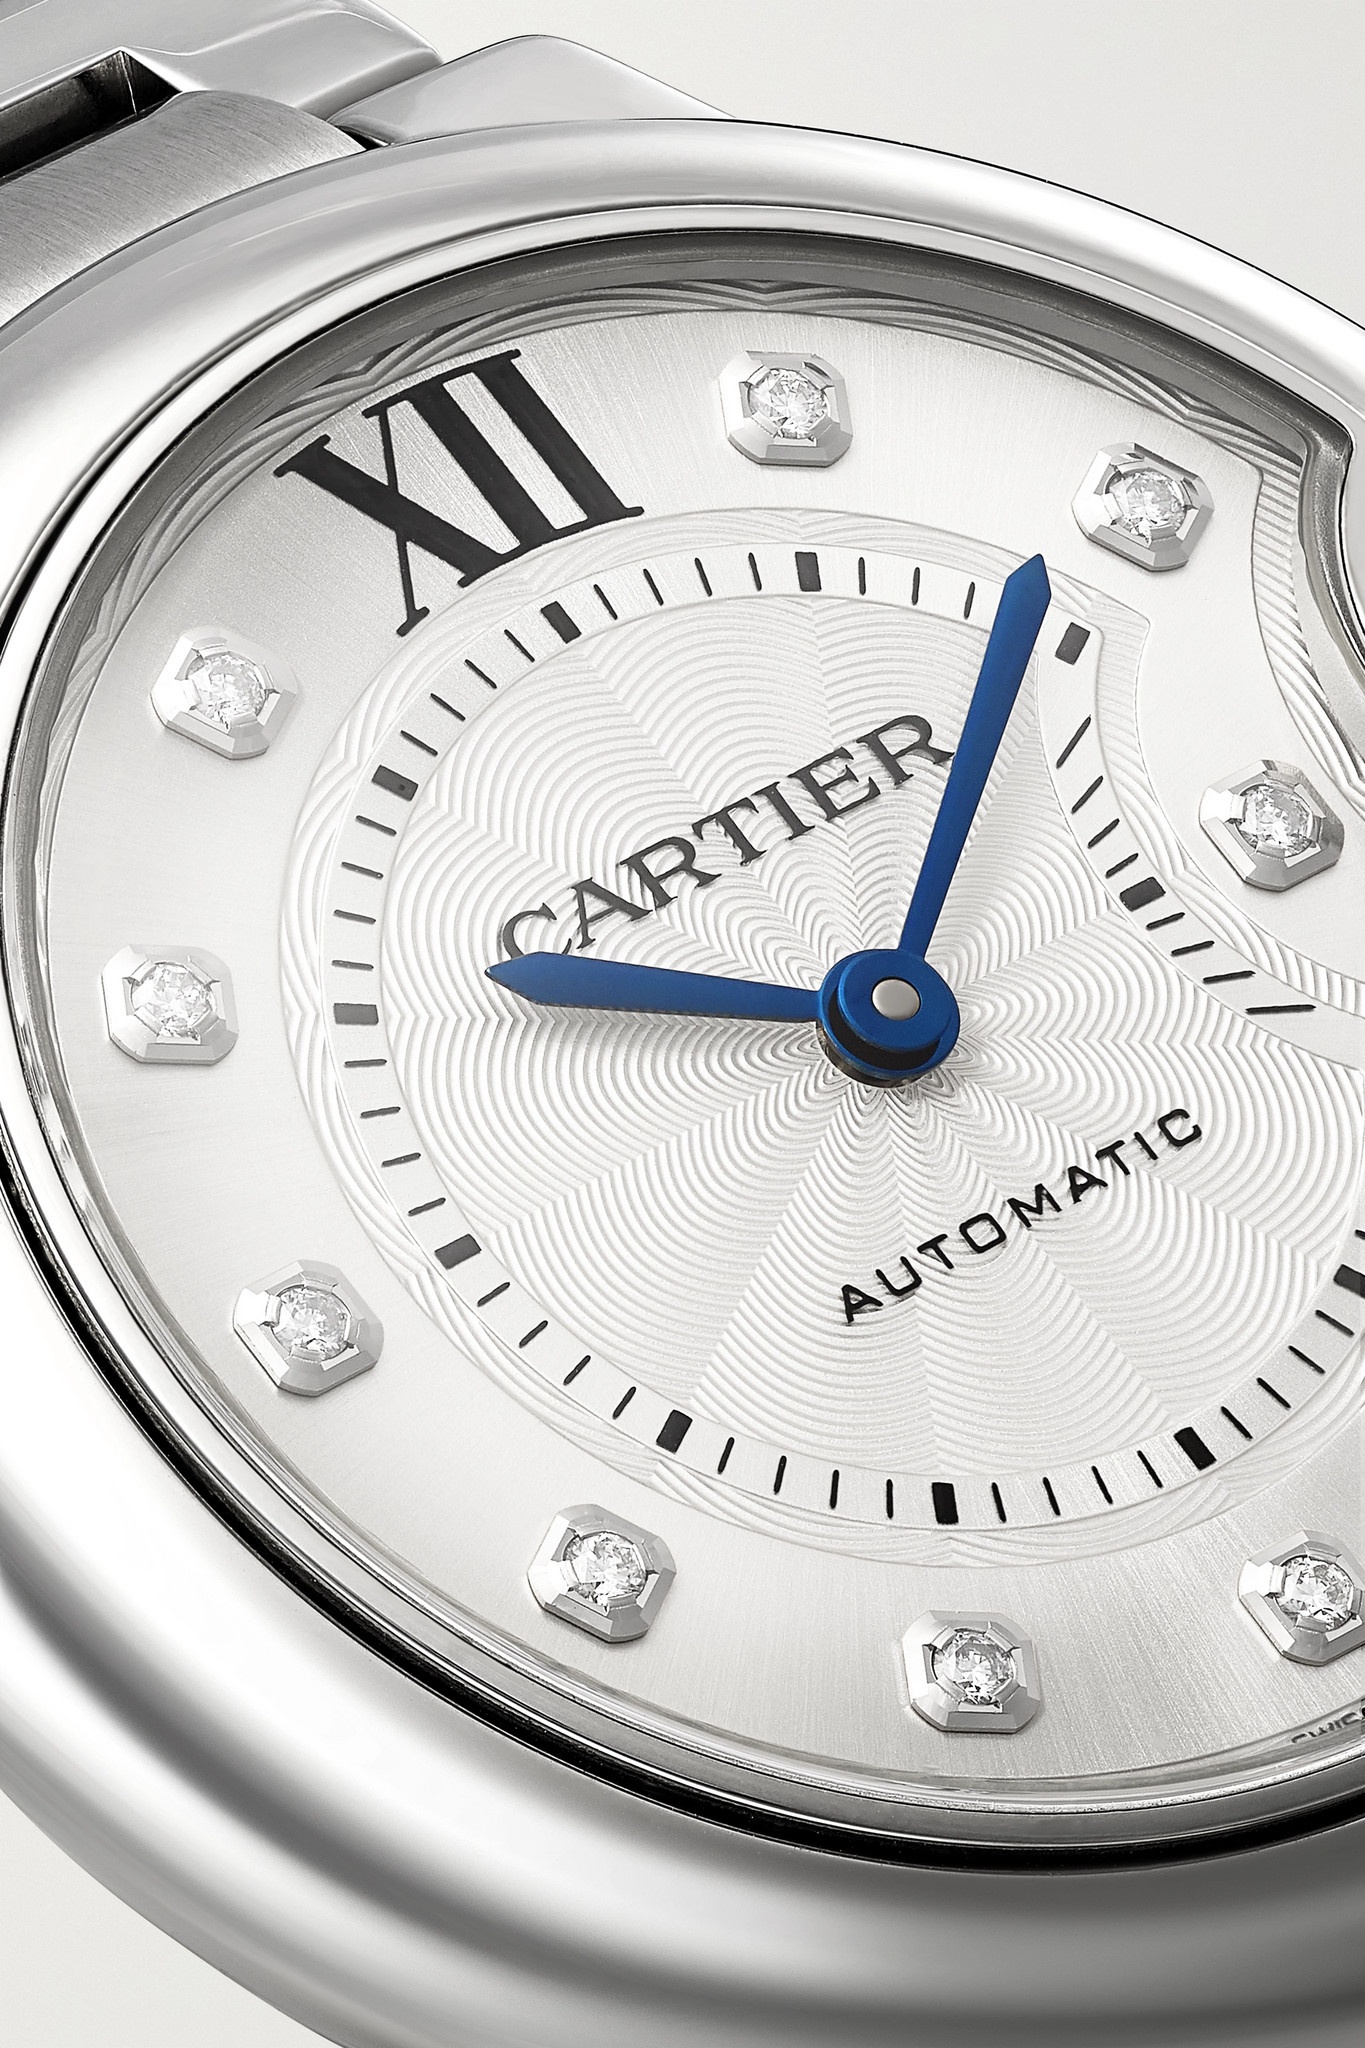 Ballon Bleu de Cartier Automatic 33mm stainless steel and diamond watch - 5